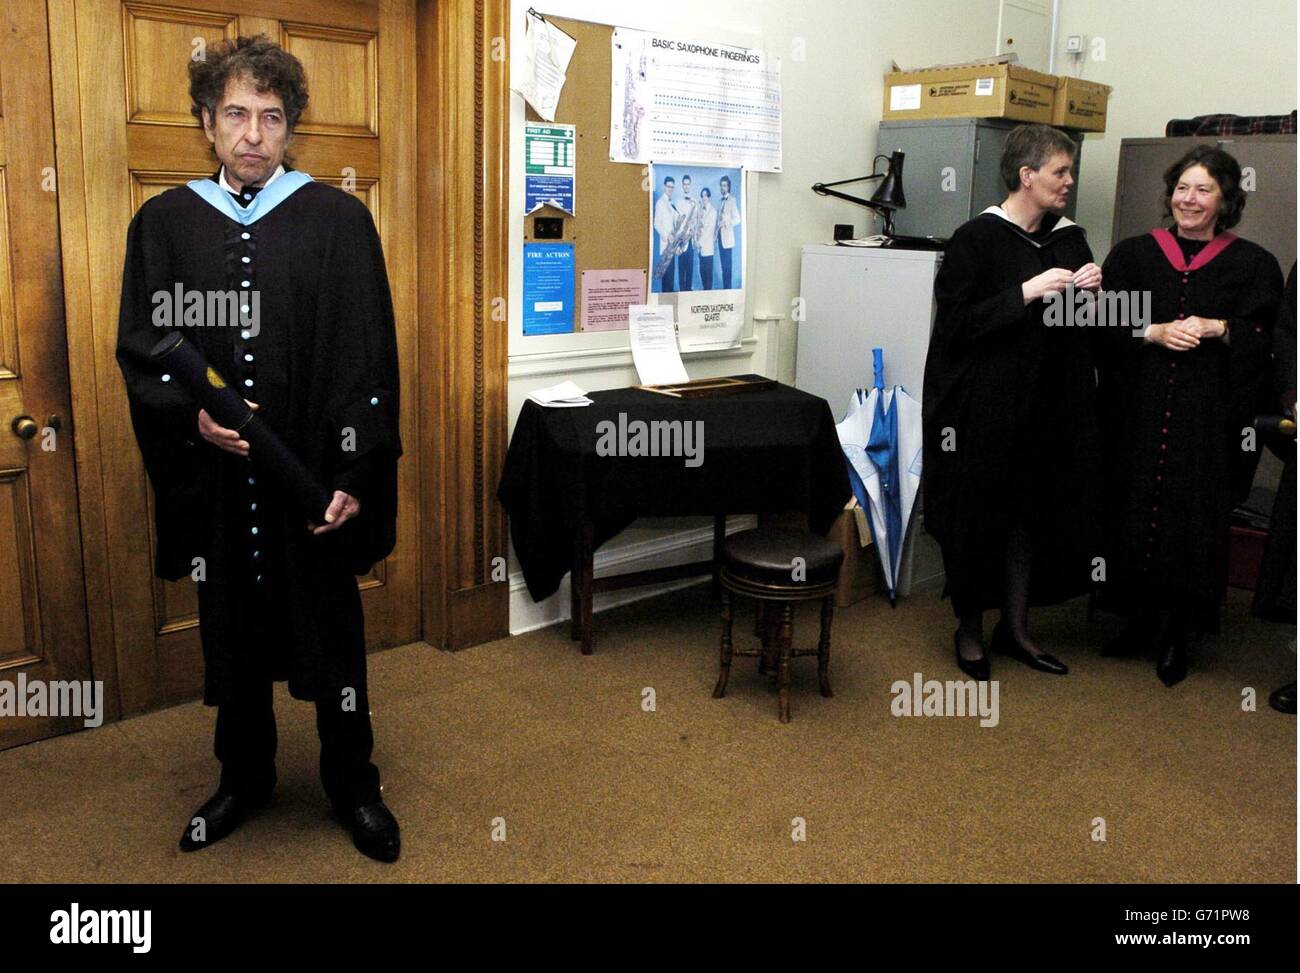 Rock Legend Bob Dylan à l'Université St Andrews, après avoir reçu un doctorat honorifique en musique.L'icône américaine, dont les hits incluent comme une pierre à roulement et M. Tambourine Man, n'a jamais accepté un autre diplôme honorifique de l'Université de Princeton en 1970. Banque D'Images